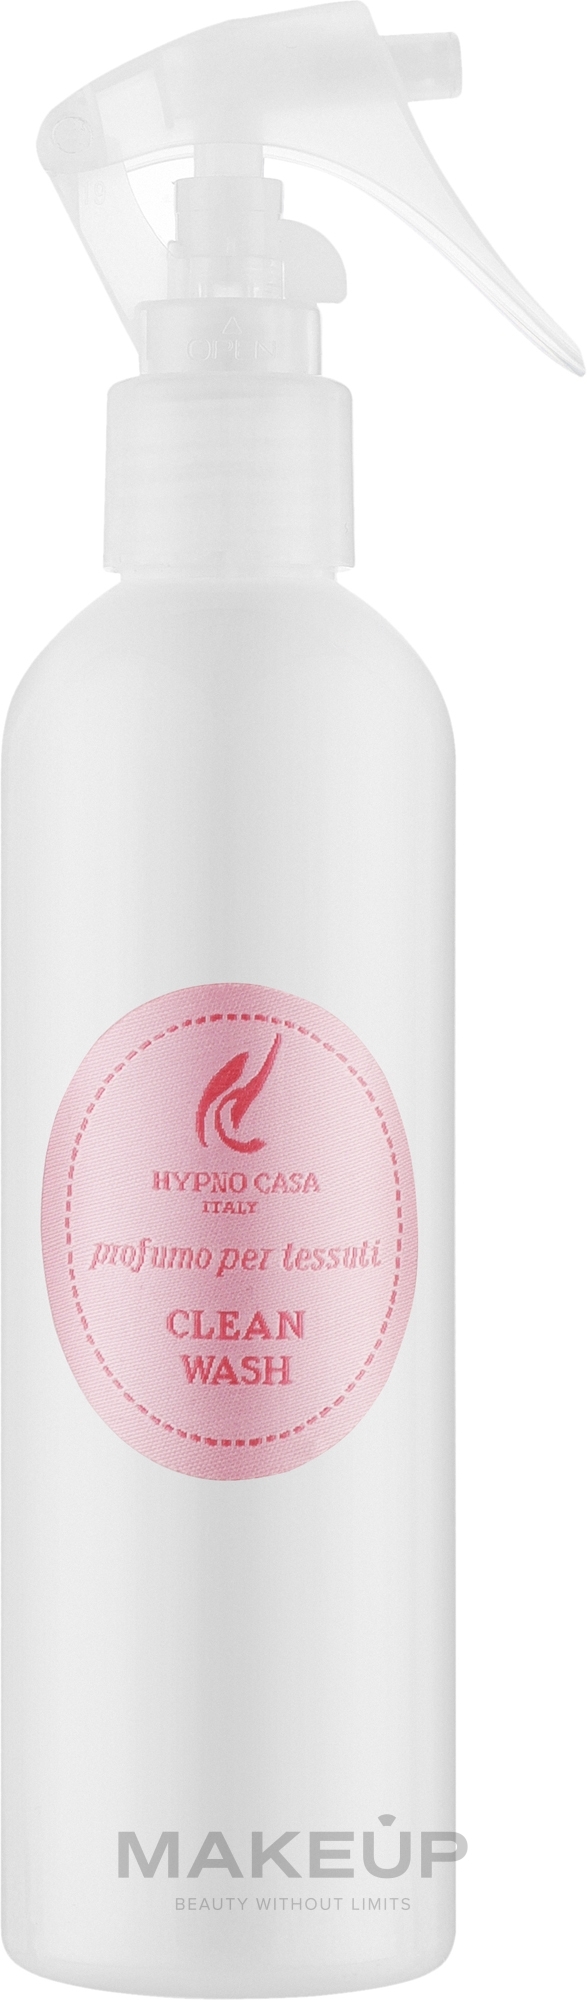 Hypno Casa Clean Wash - Парфюм для текстиля — фото 250ml